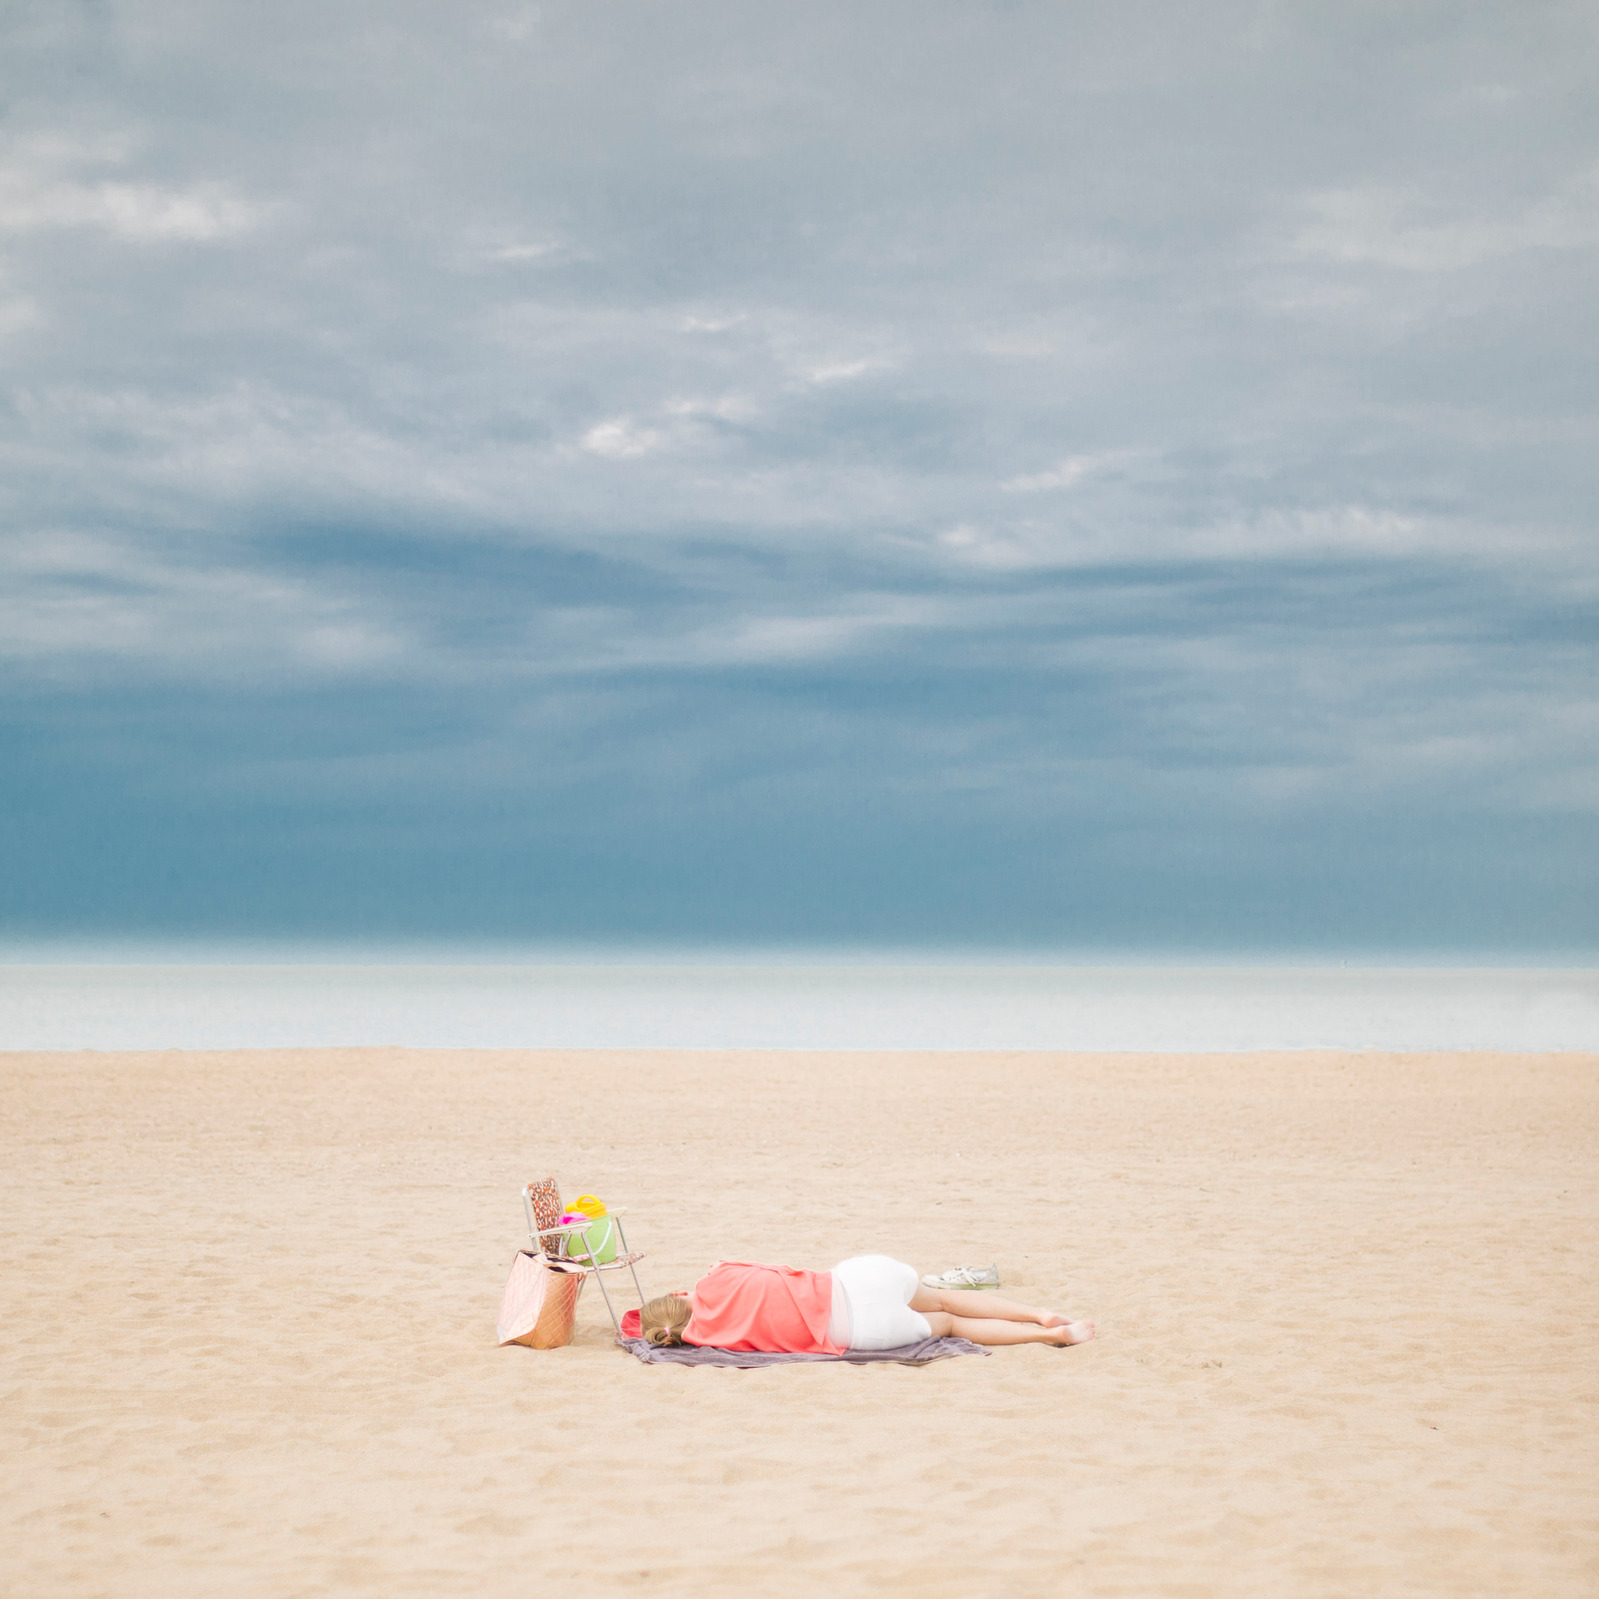 Alone - Dame seule sur la plage du Touquet